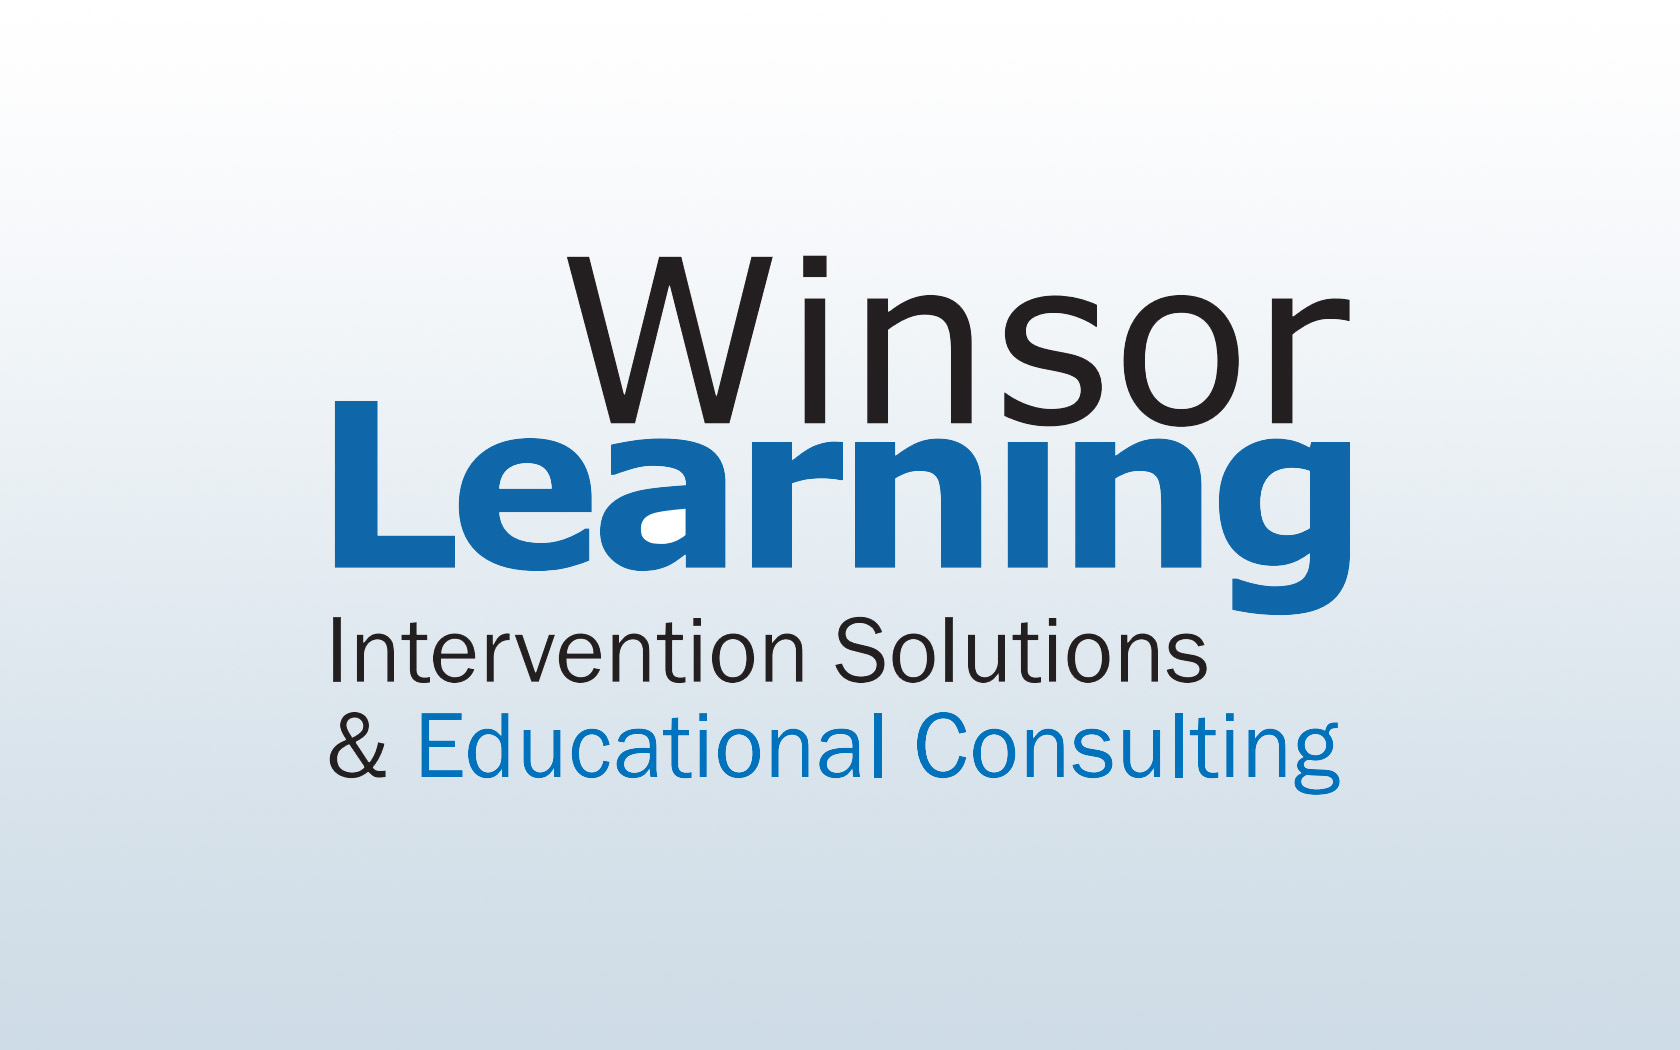 Winsor learning company